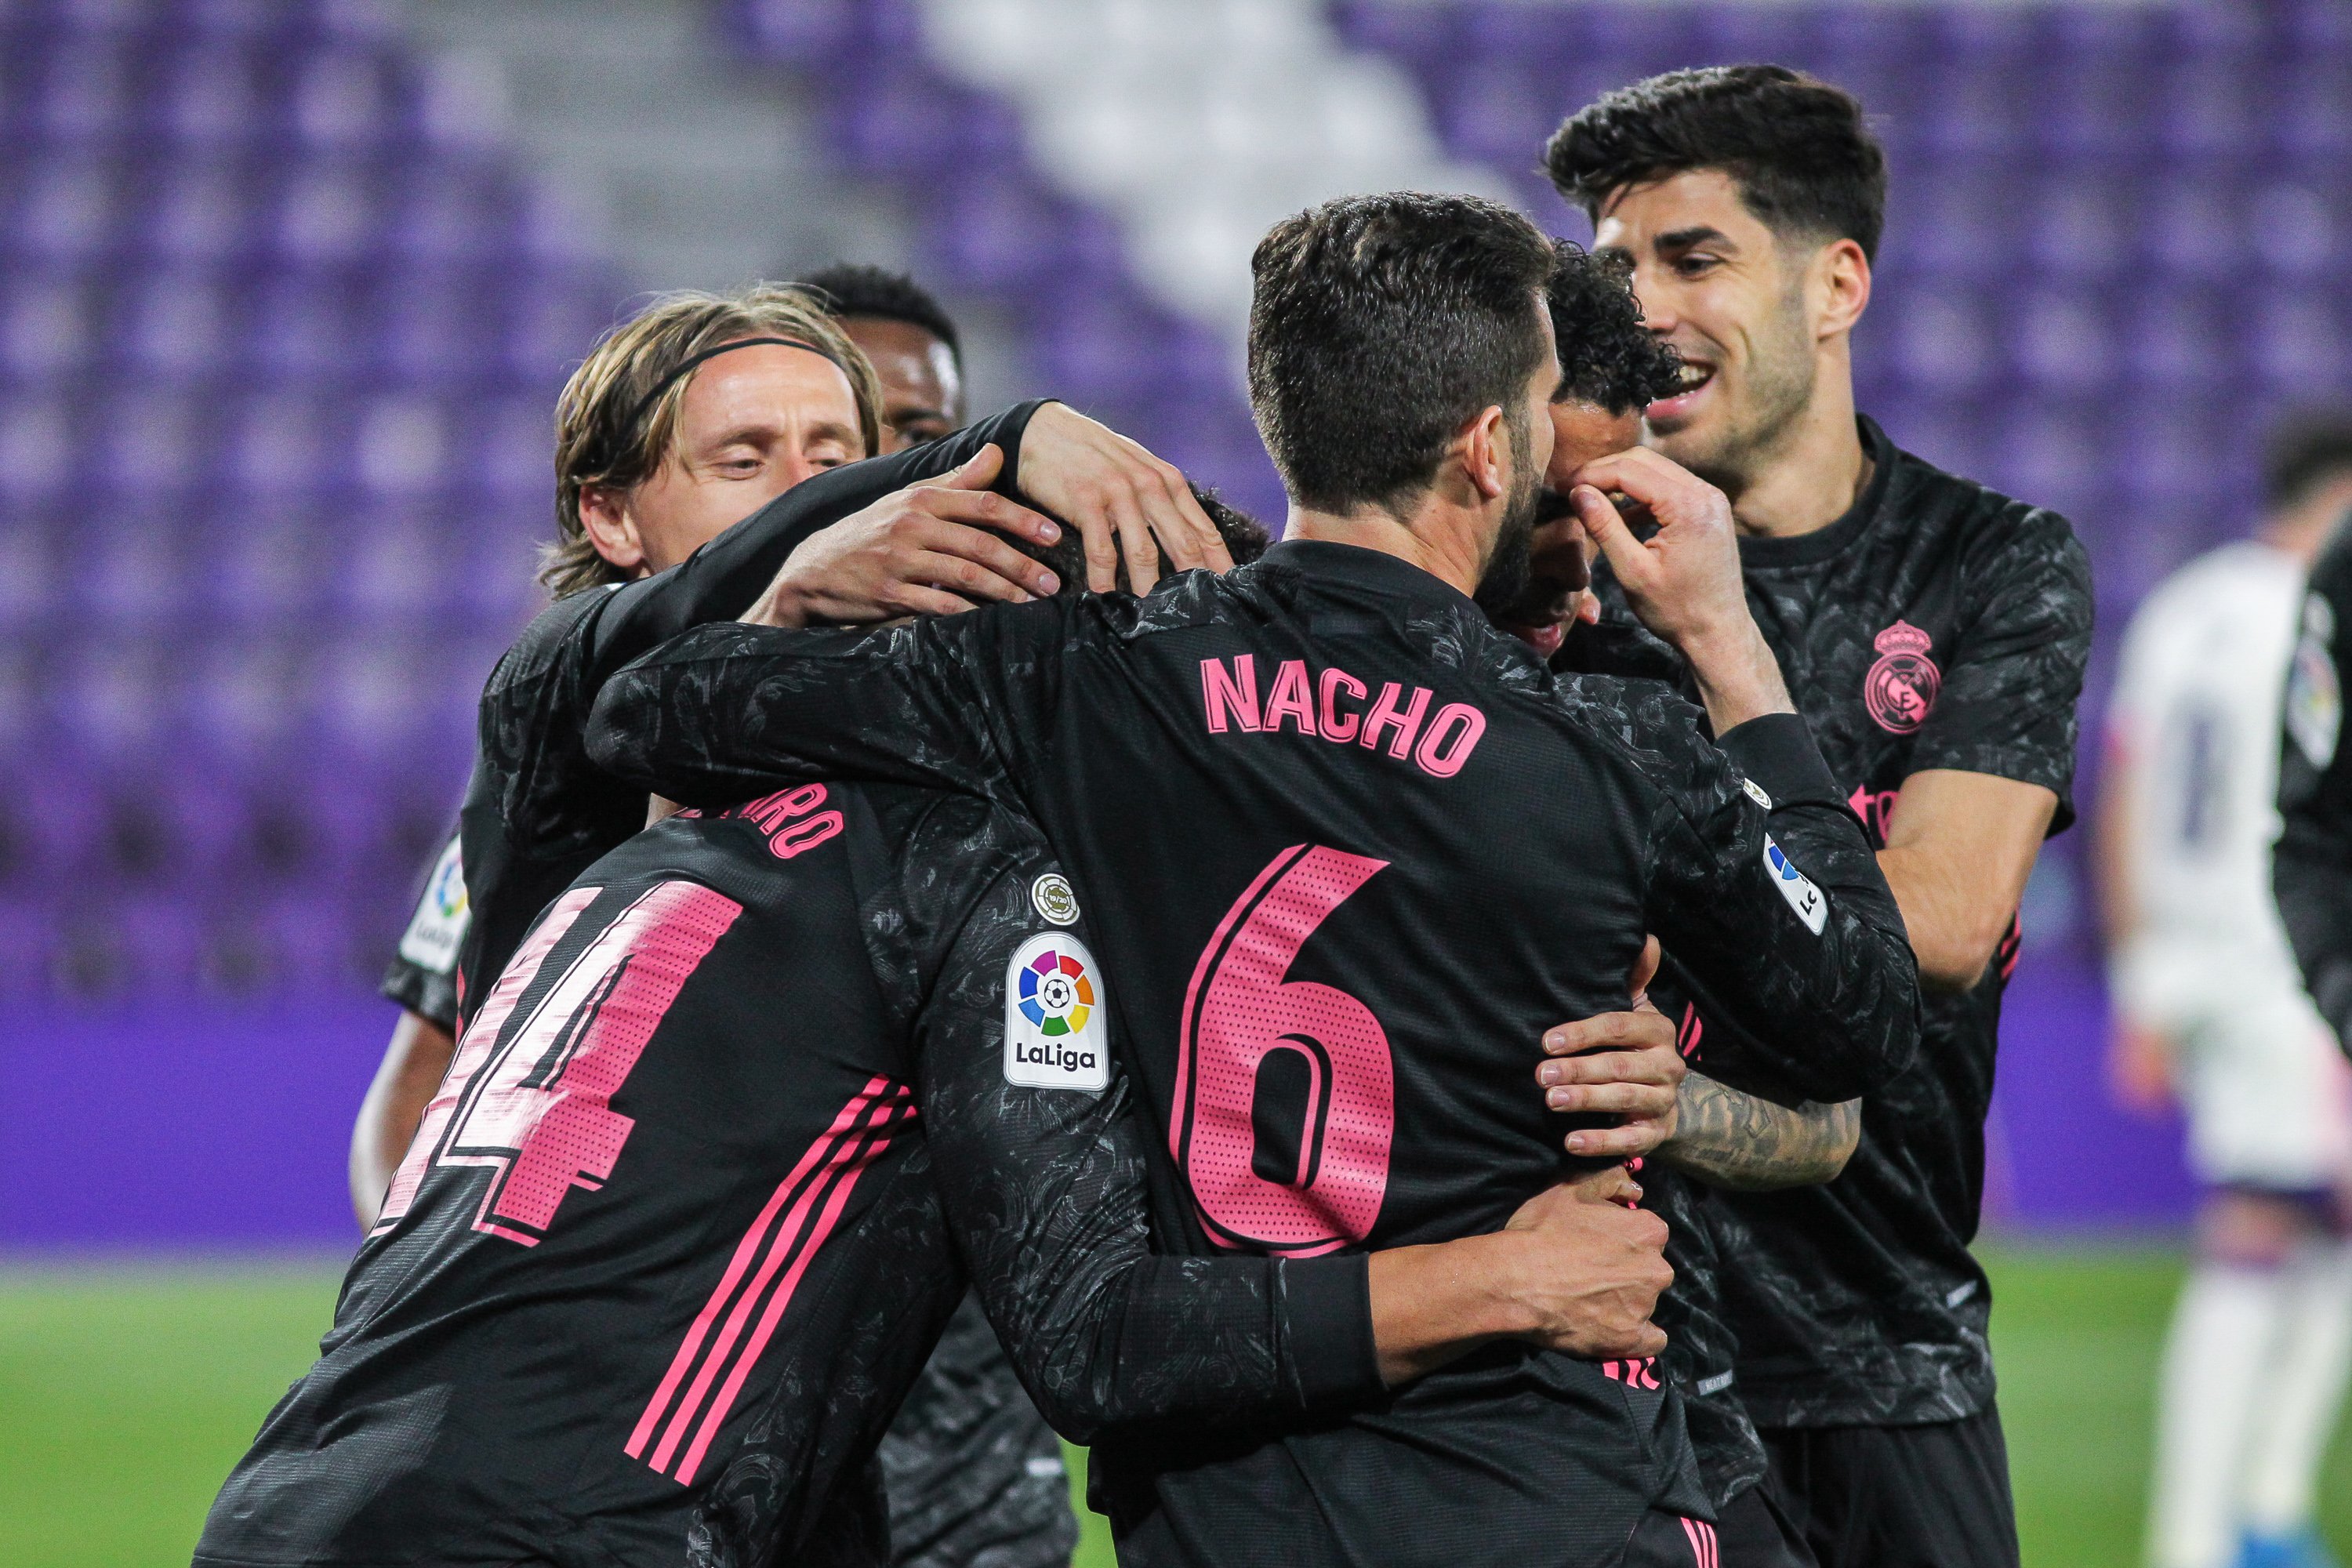 Un Reial Madrid pragmàtic supera el Valladolid gràcies a la pilota aturada (0-1)